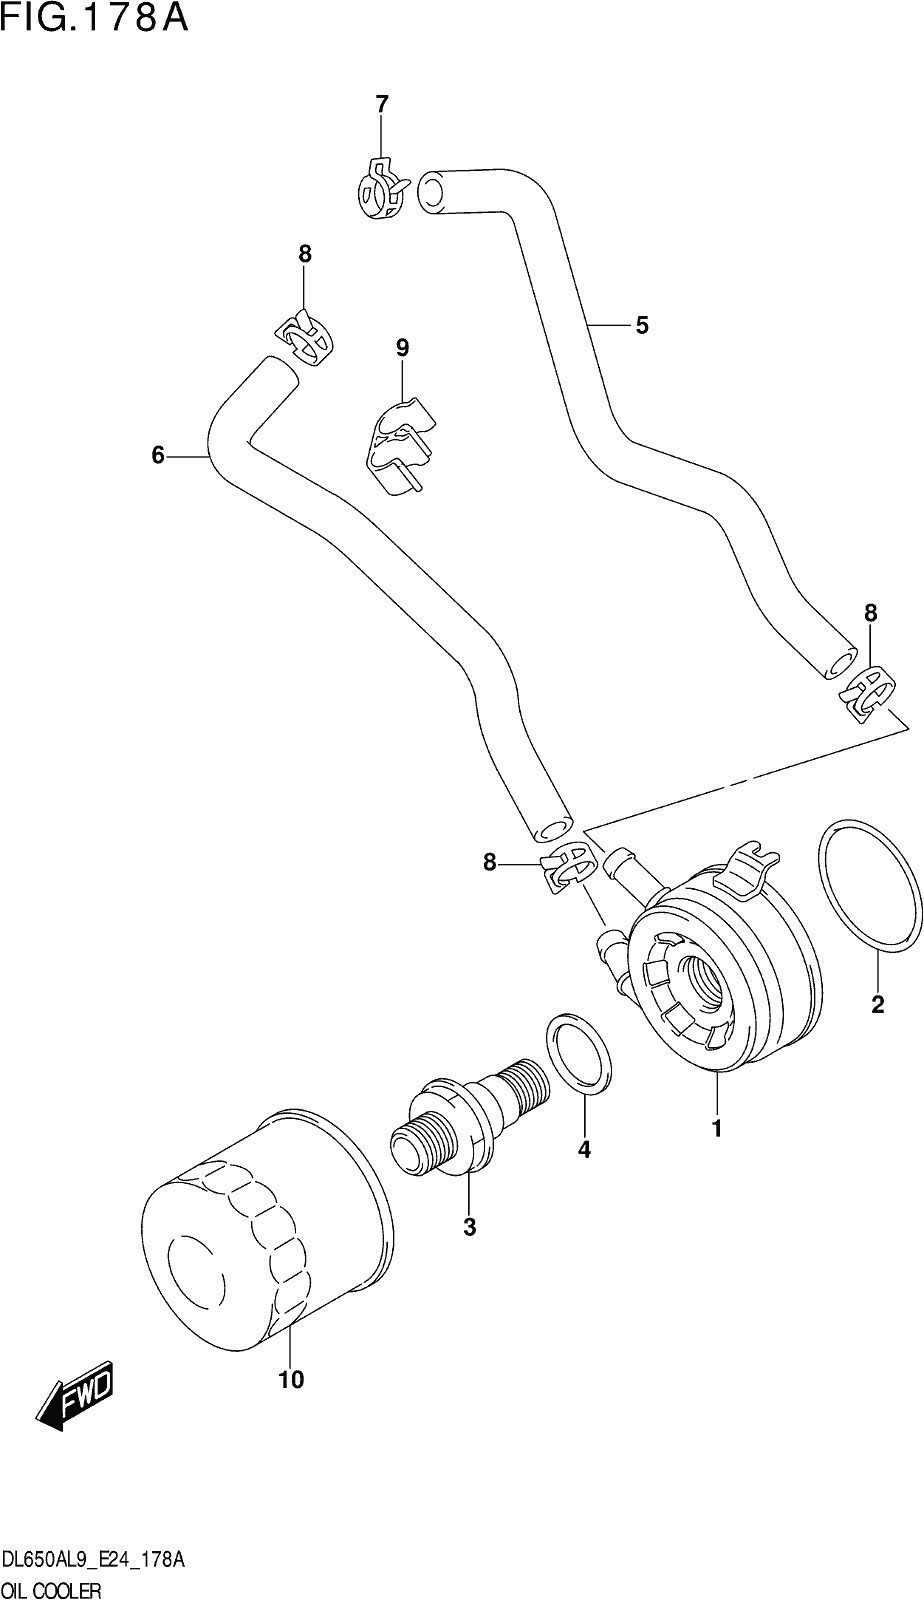 Fig.178a Oil Cooler